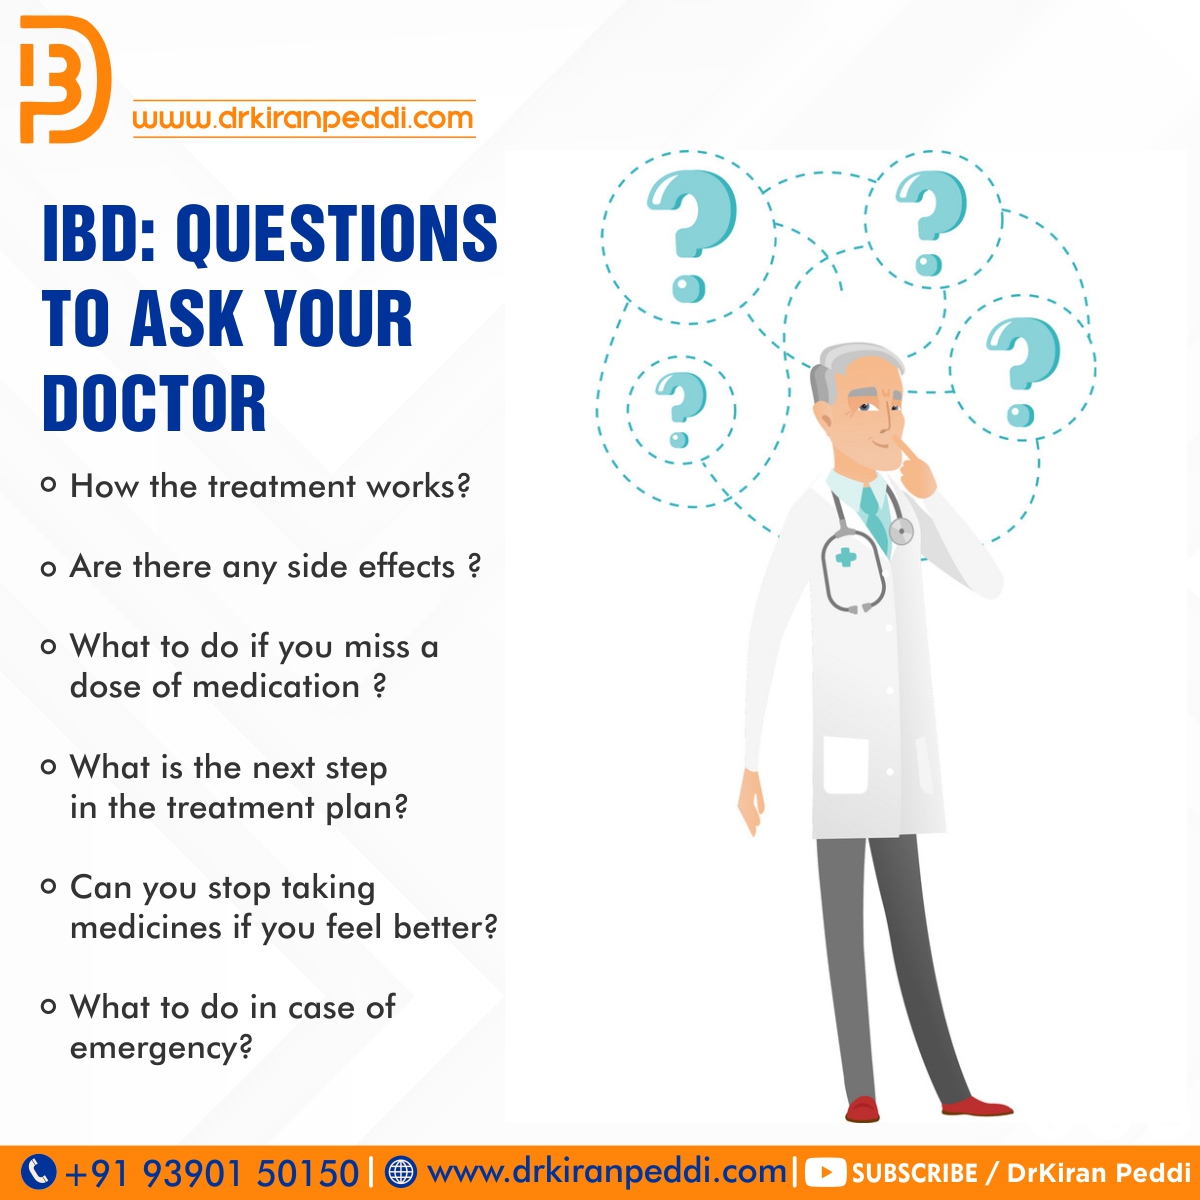 Treatment for IBD